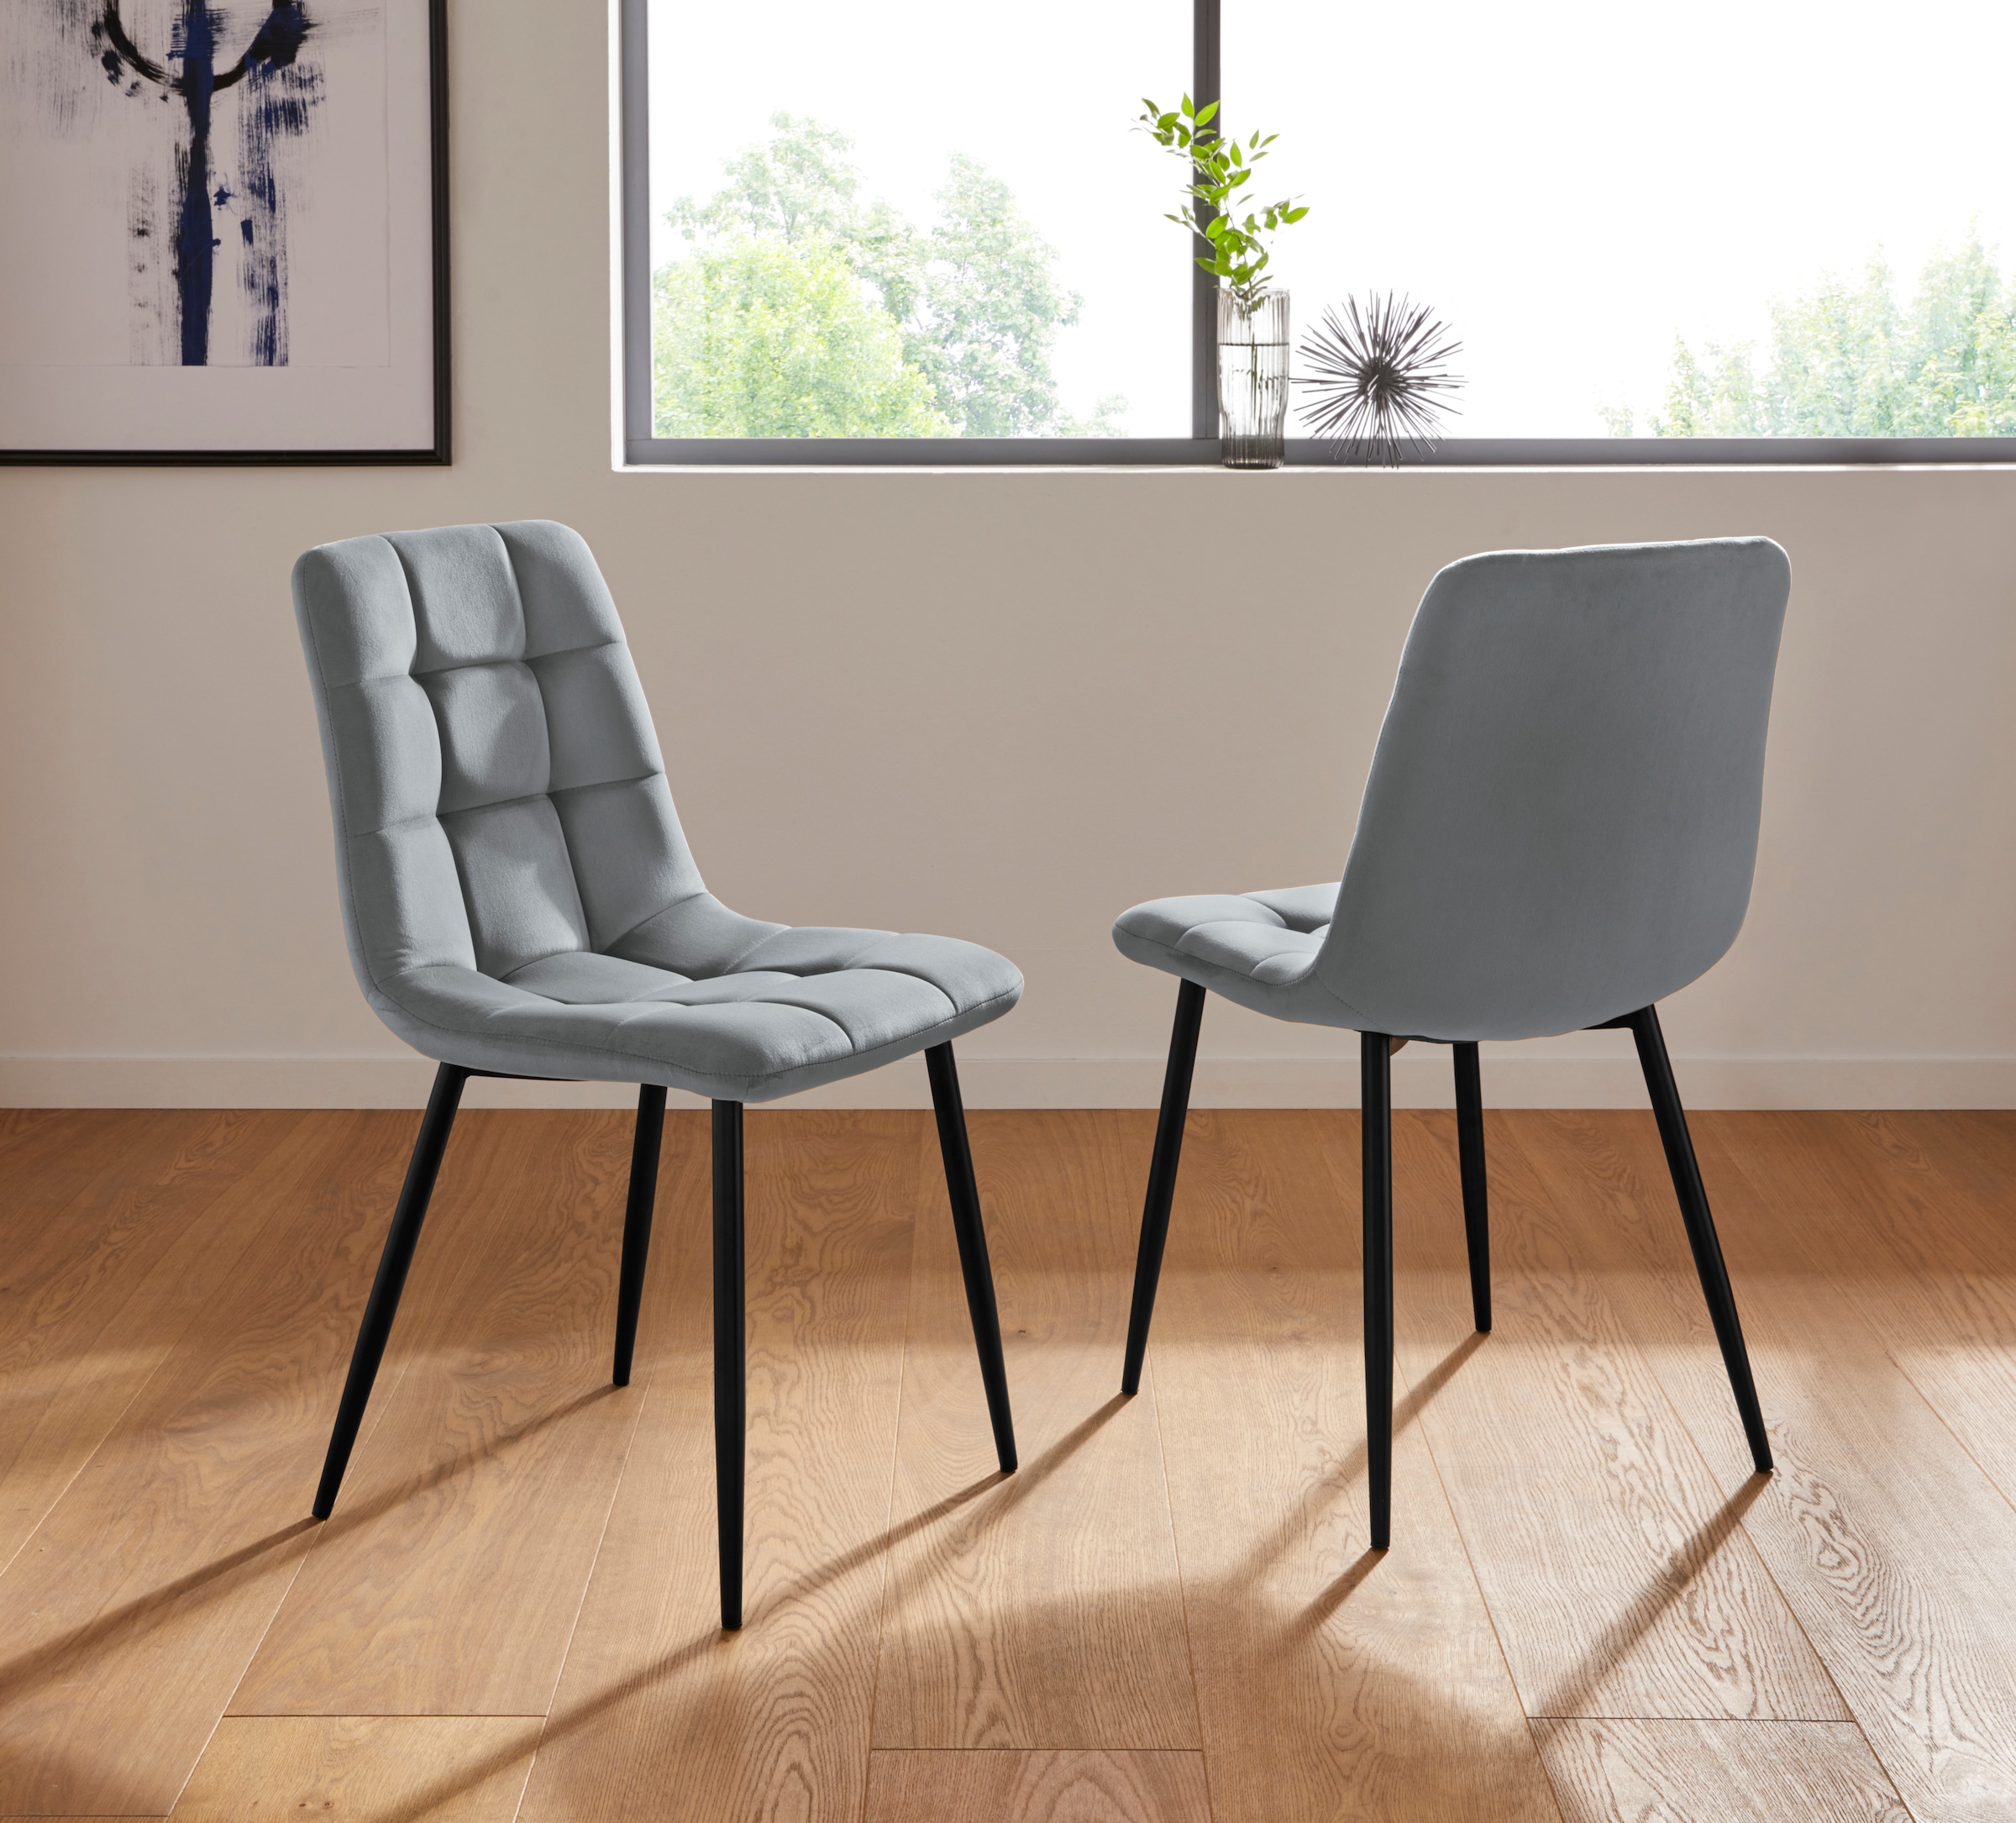 Stoff-Stuhl online kaufen | OTTO jetzt Schöne Stoff-Stühle bei